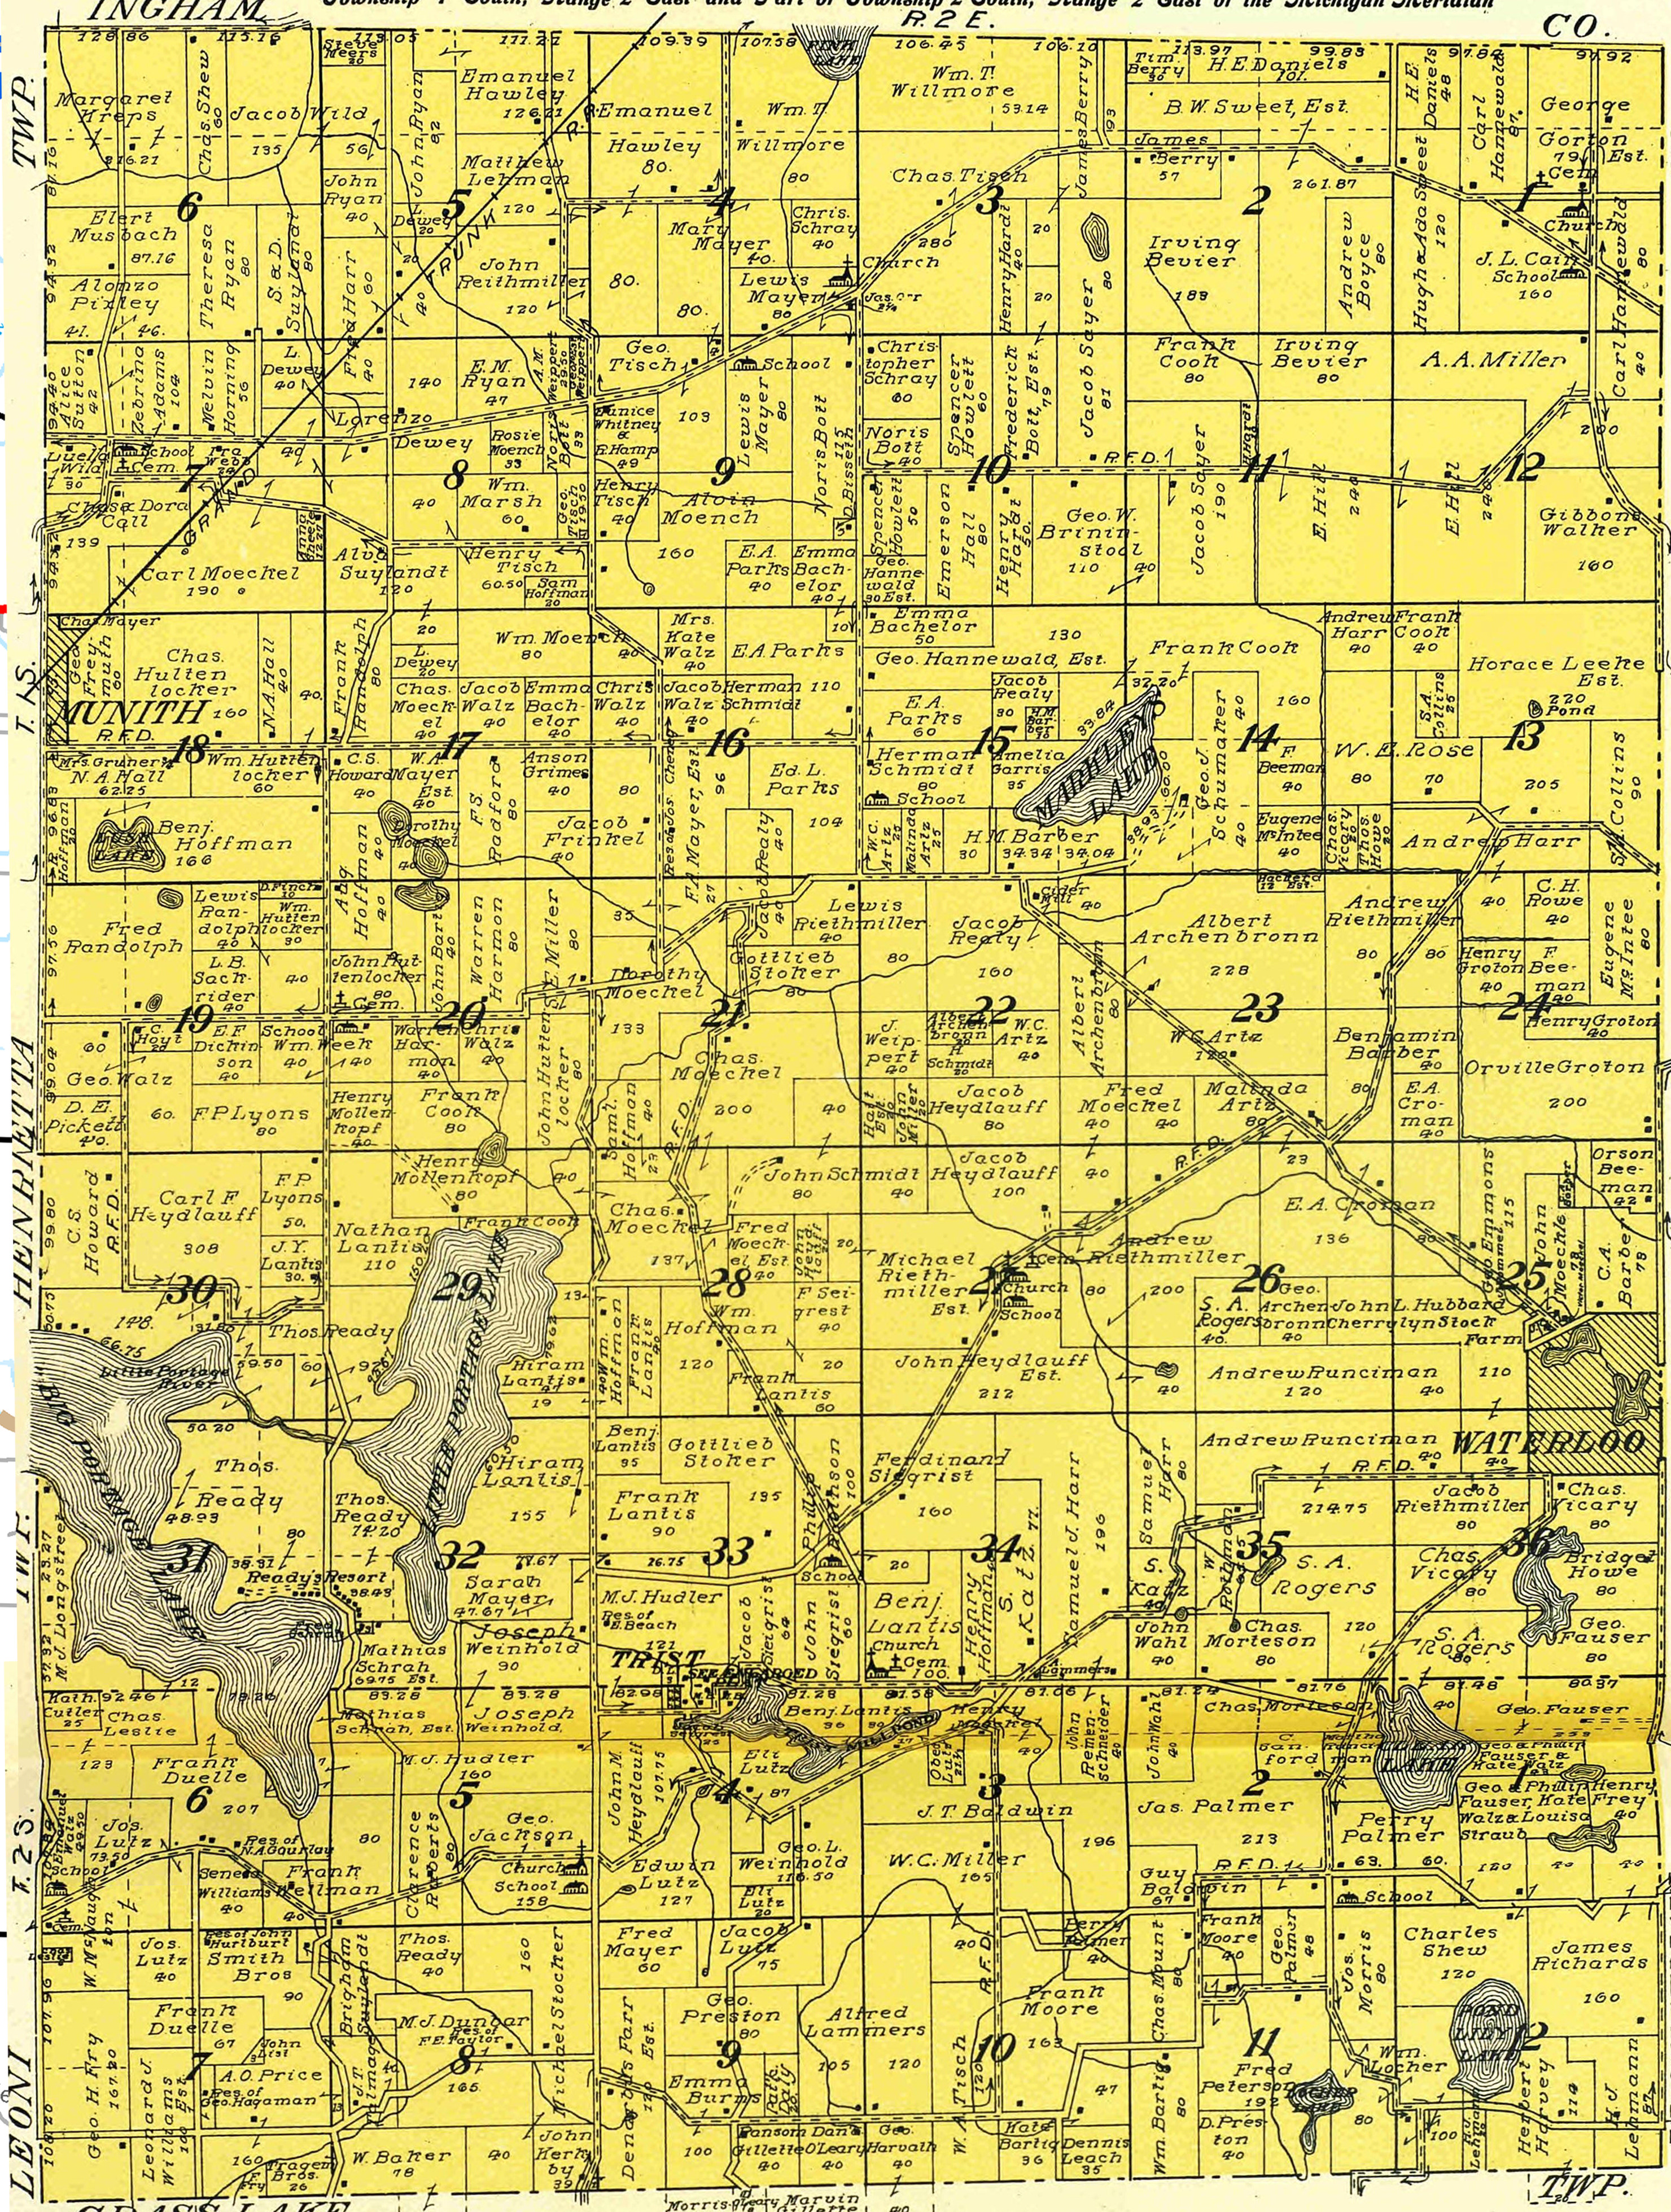 1911 Waterloo Township, Michigan landownership map